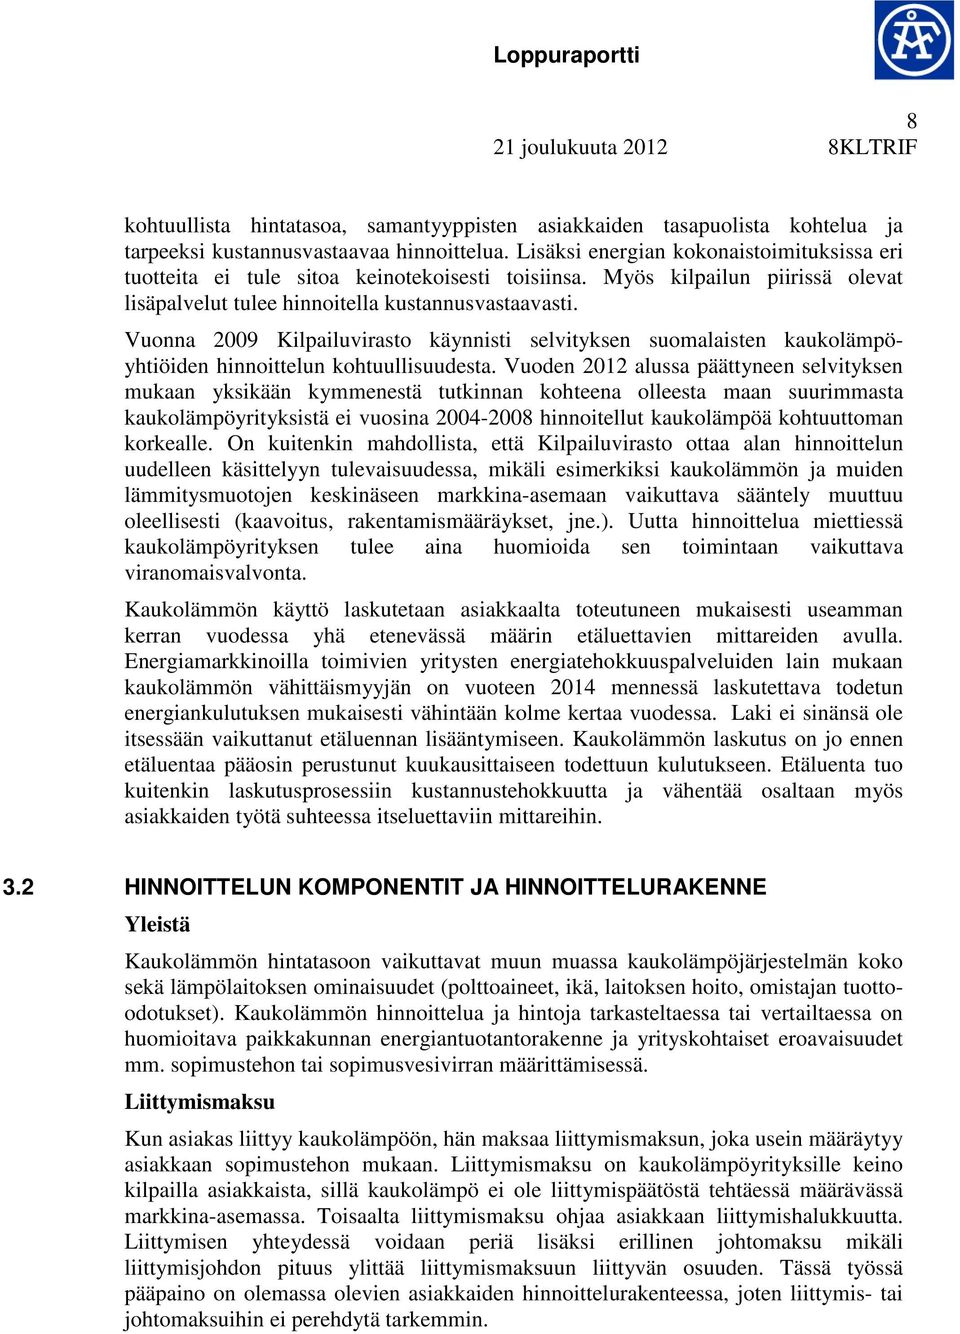 Vuonna 2009 Kilpailuvirasto käynnisti selvityksen suomalaisten kaukolämpöyhtiöiden hinnoittelun kohtuullisuudesta.